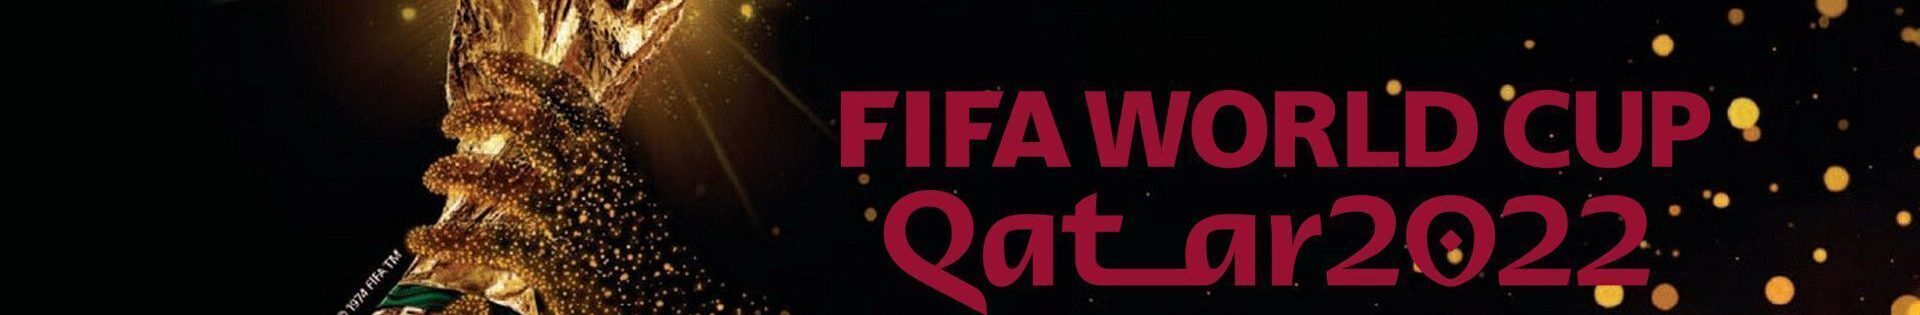 Fussballreise, Fußball Weltmeisterschaft, Perfect Tours Qatar World Cup Fussballreise Logo4